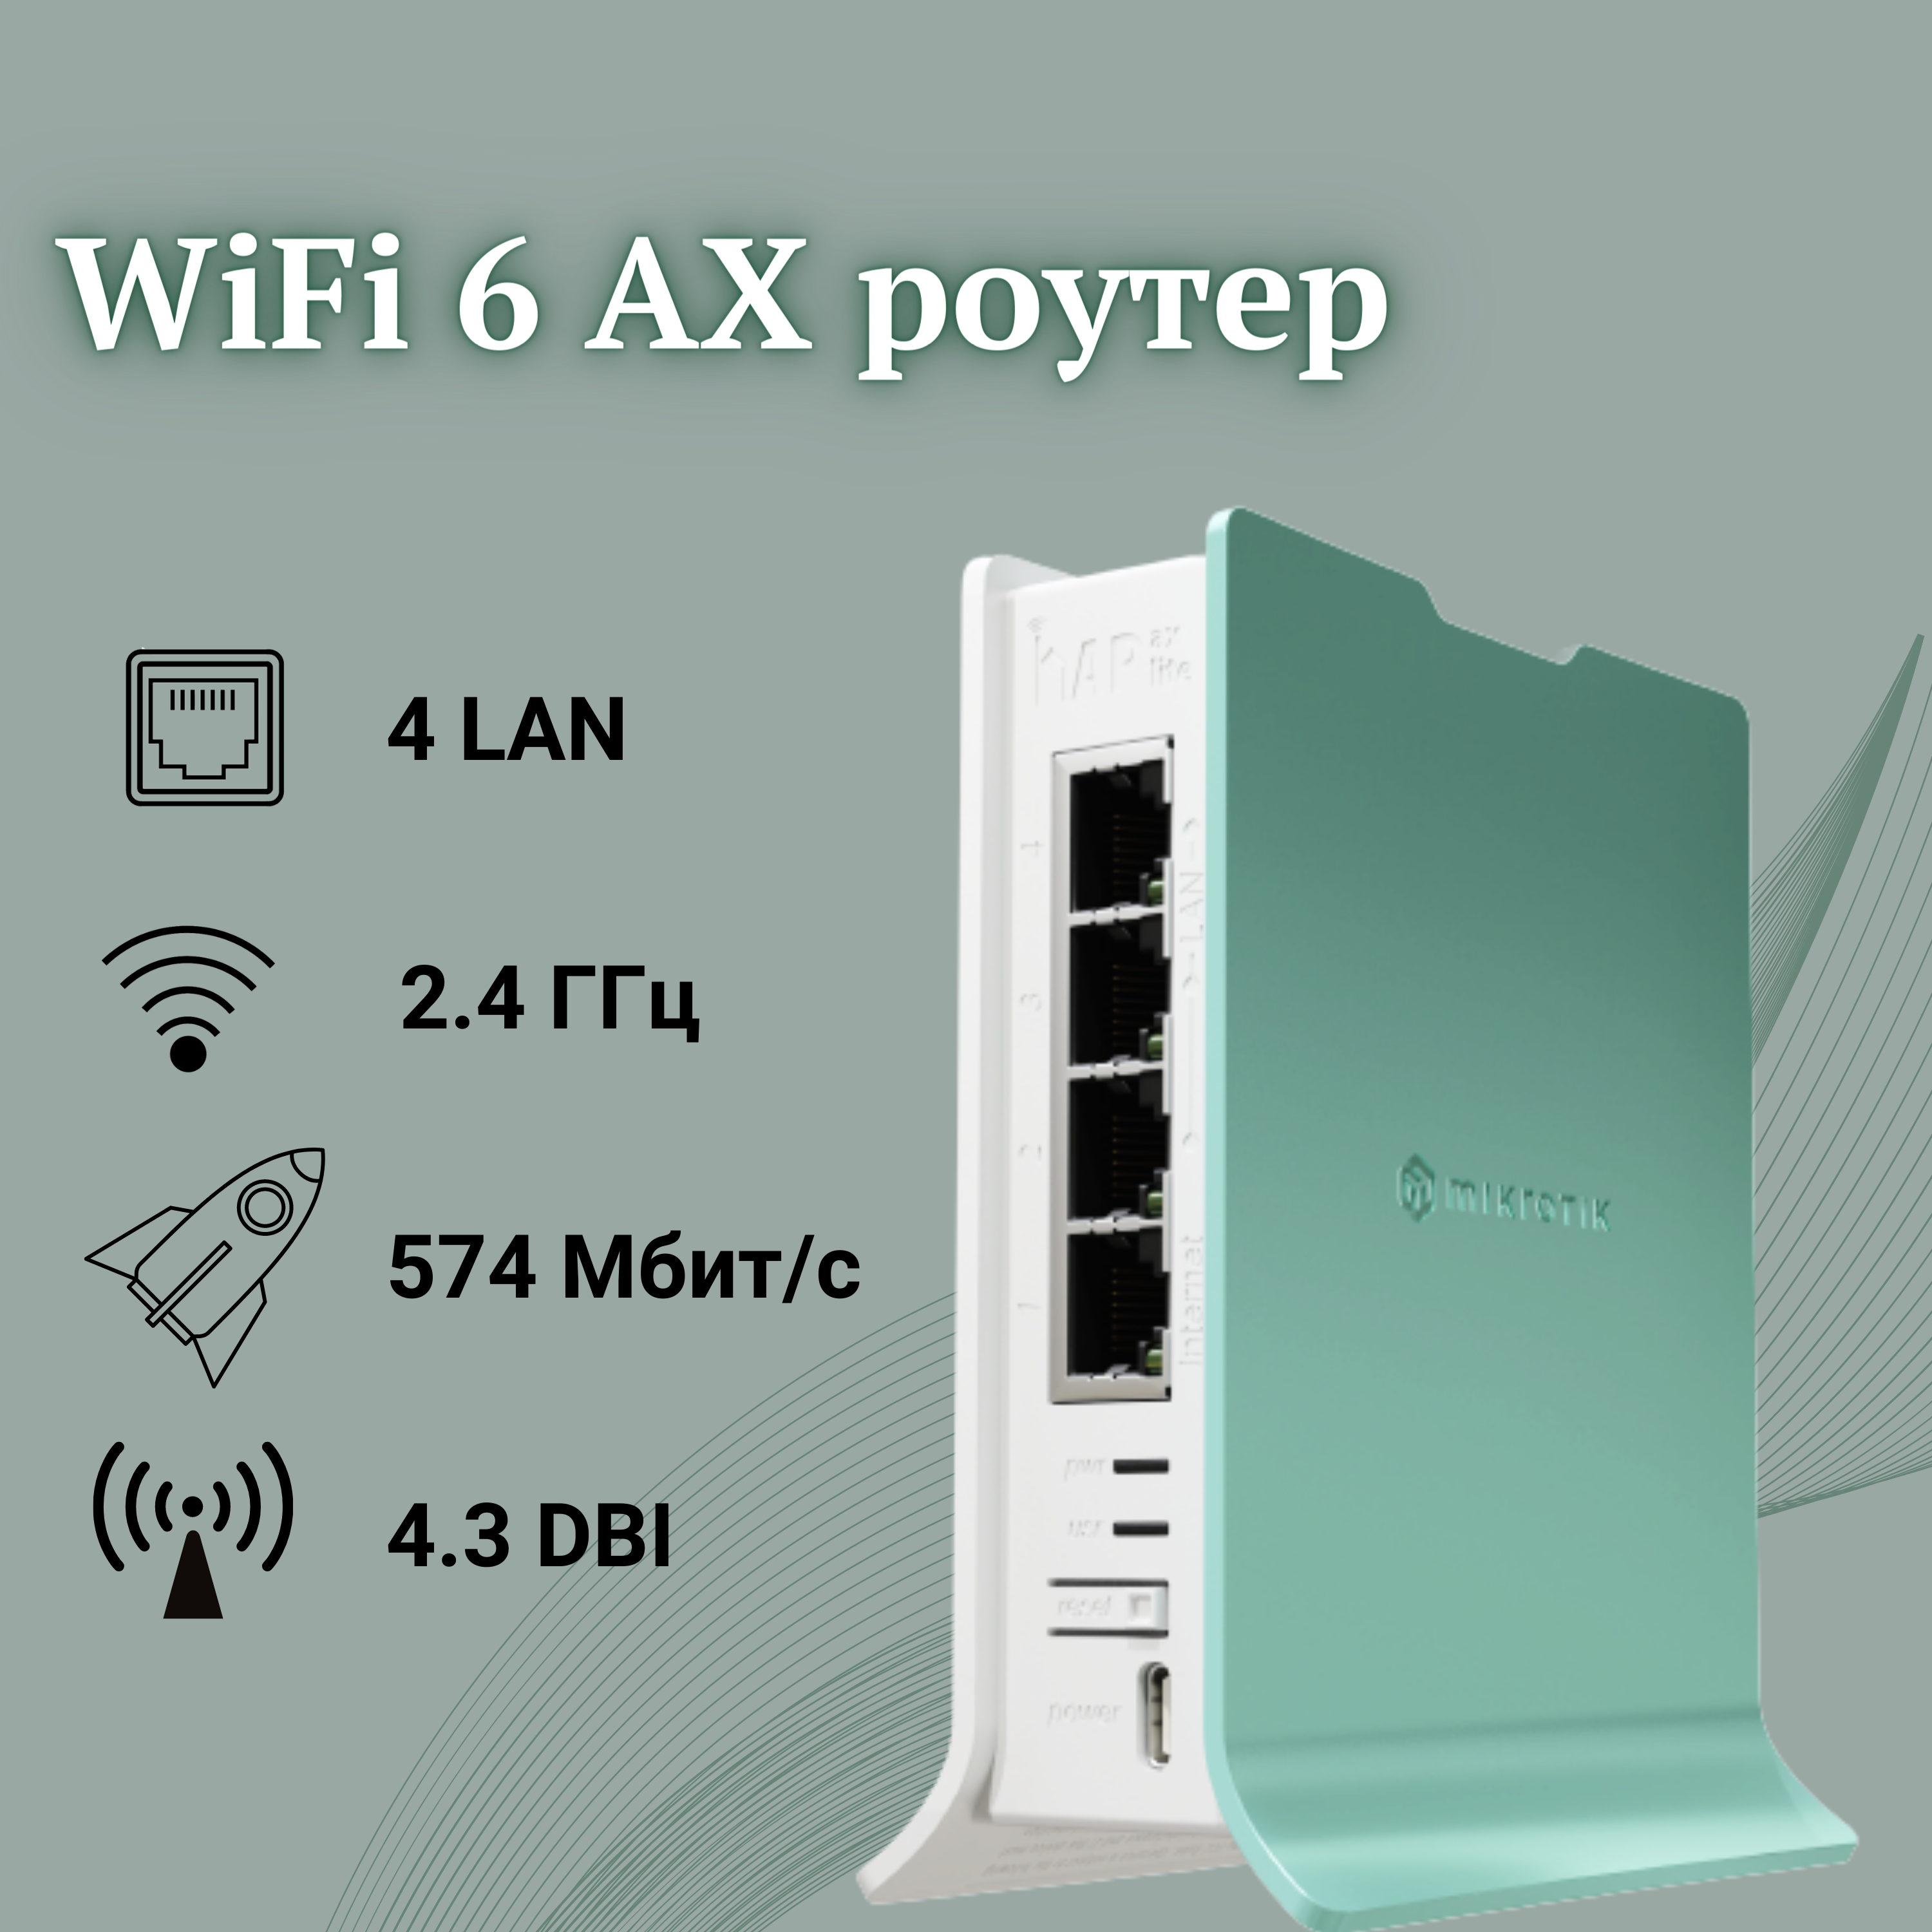 Беспроводной маршрутизатор Mikrotik, WiFi 6 AX роутер hAP AX Lite (L41G-2axD) 2 ГГц